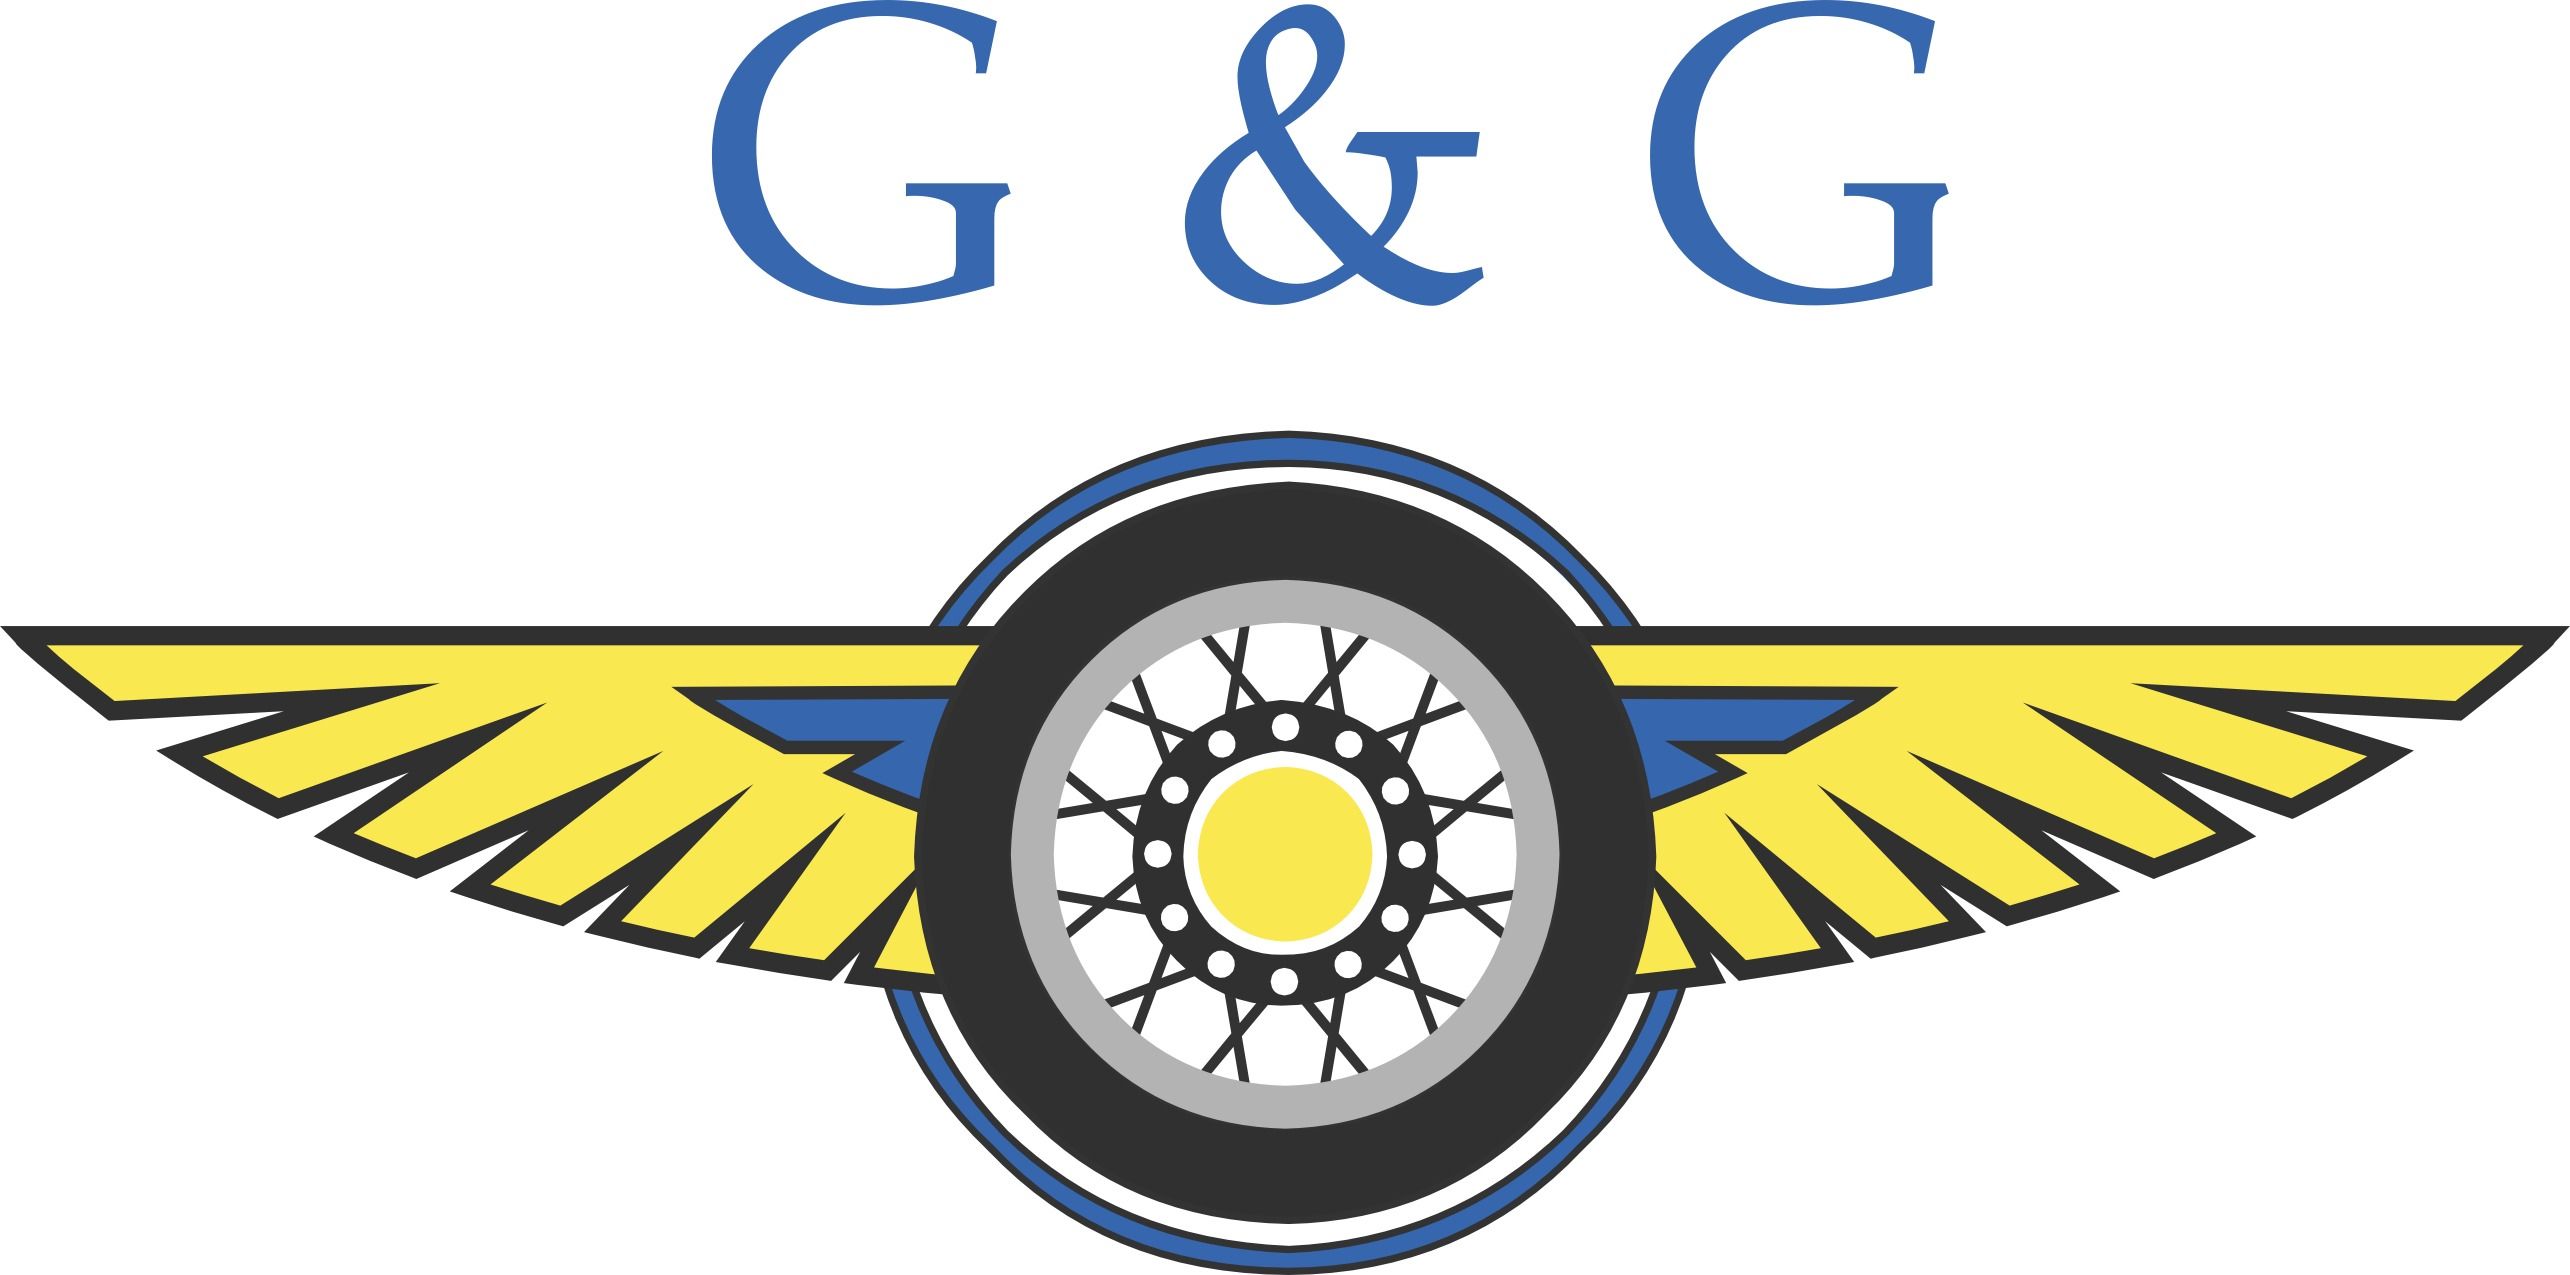 Gross und Geis Logo